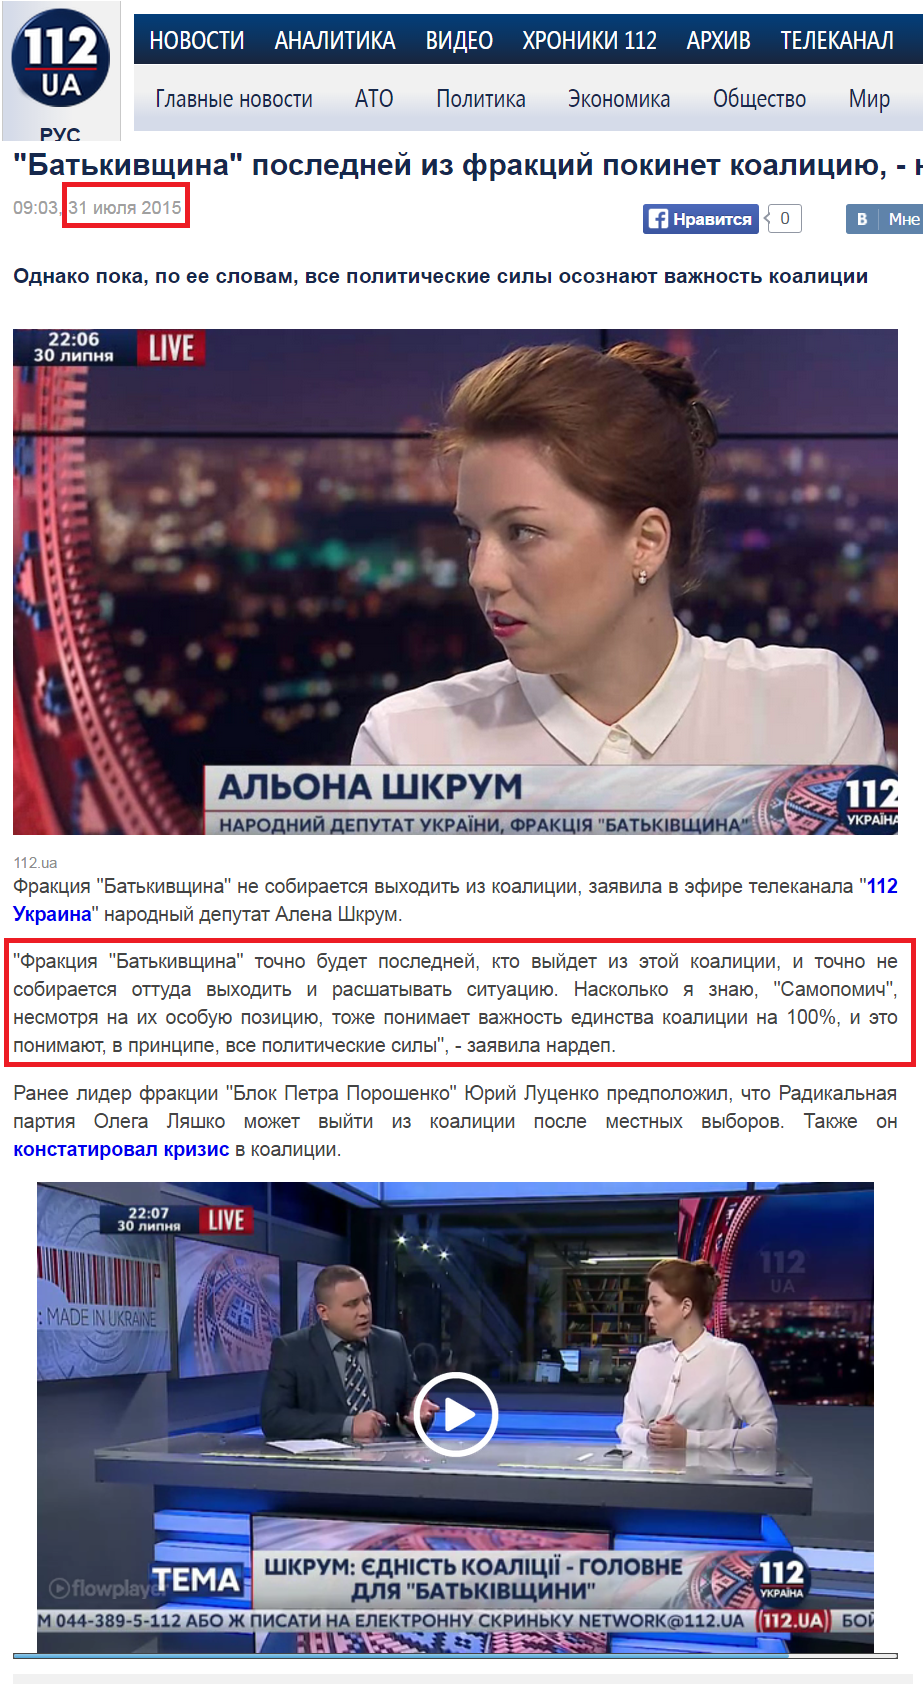 http://112.ua/politika/batkivshhina-posledney-iz-frakciy-pokinet-koaliciyu-nardep-248891.html